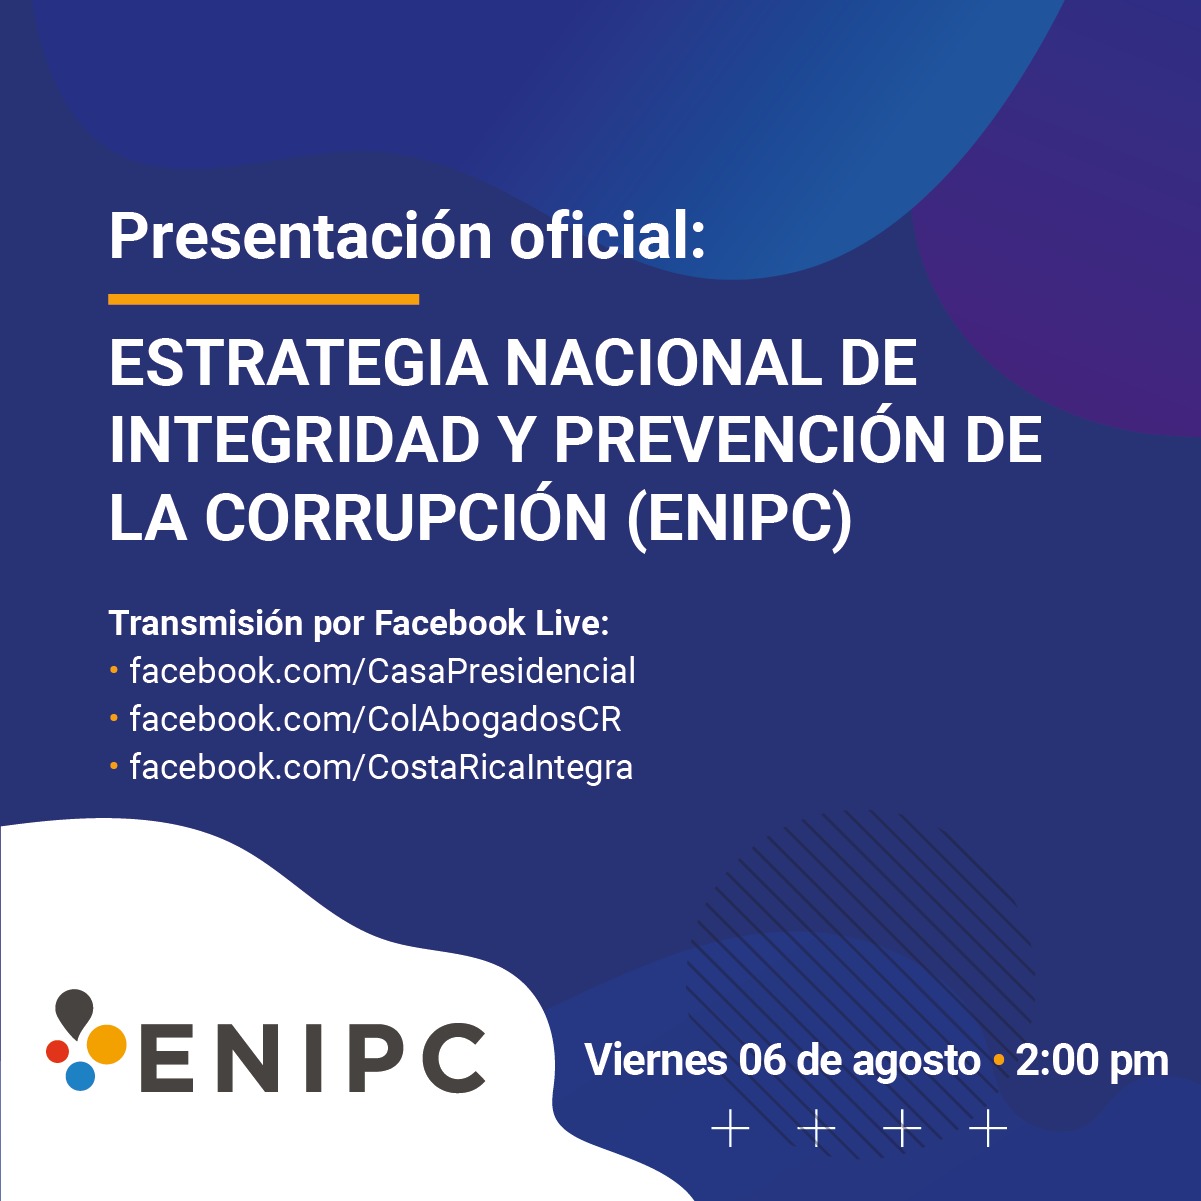 Información sobre Presentación Oficial de la Estrategia Nacional de Integridad y Prevención de la Corrupción (ENIPC)